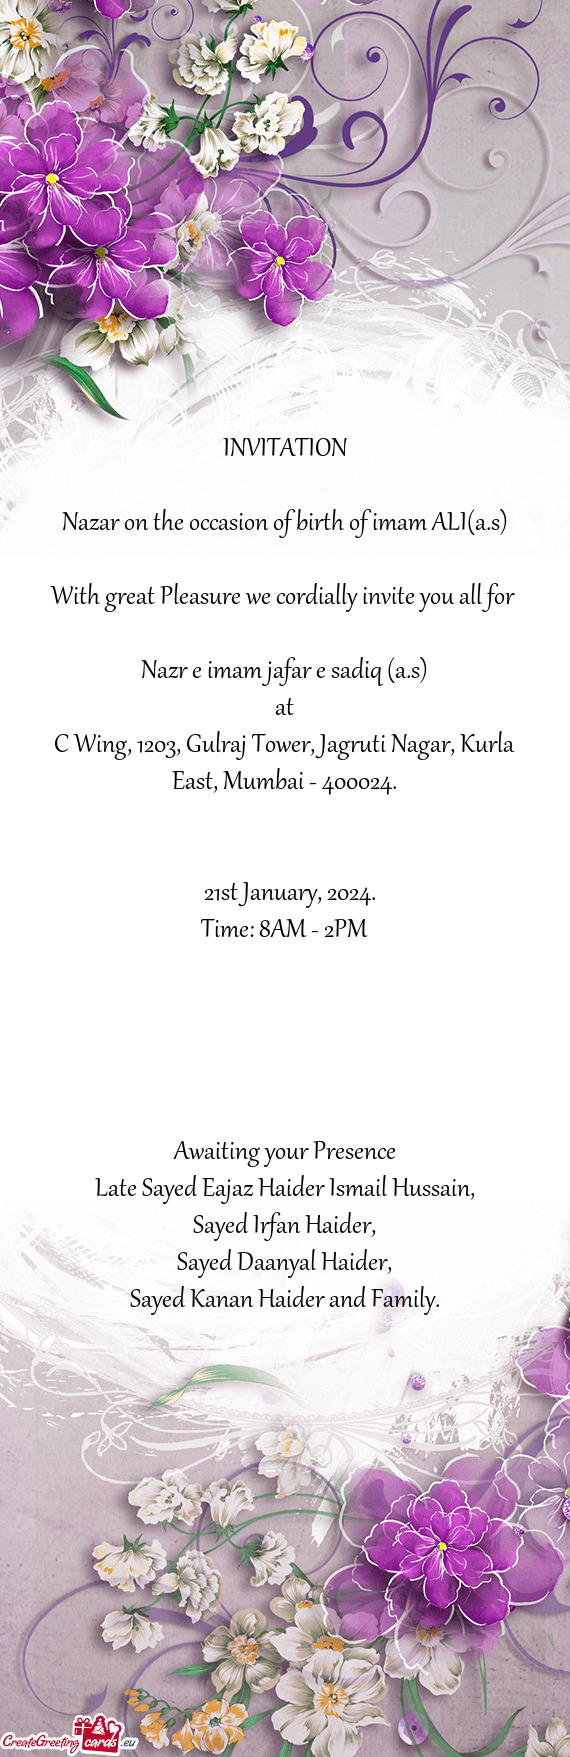 C Wing, 1203, Gulraj Tower, Jagruti Nagar, Kurla East, Mumbai - 400024